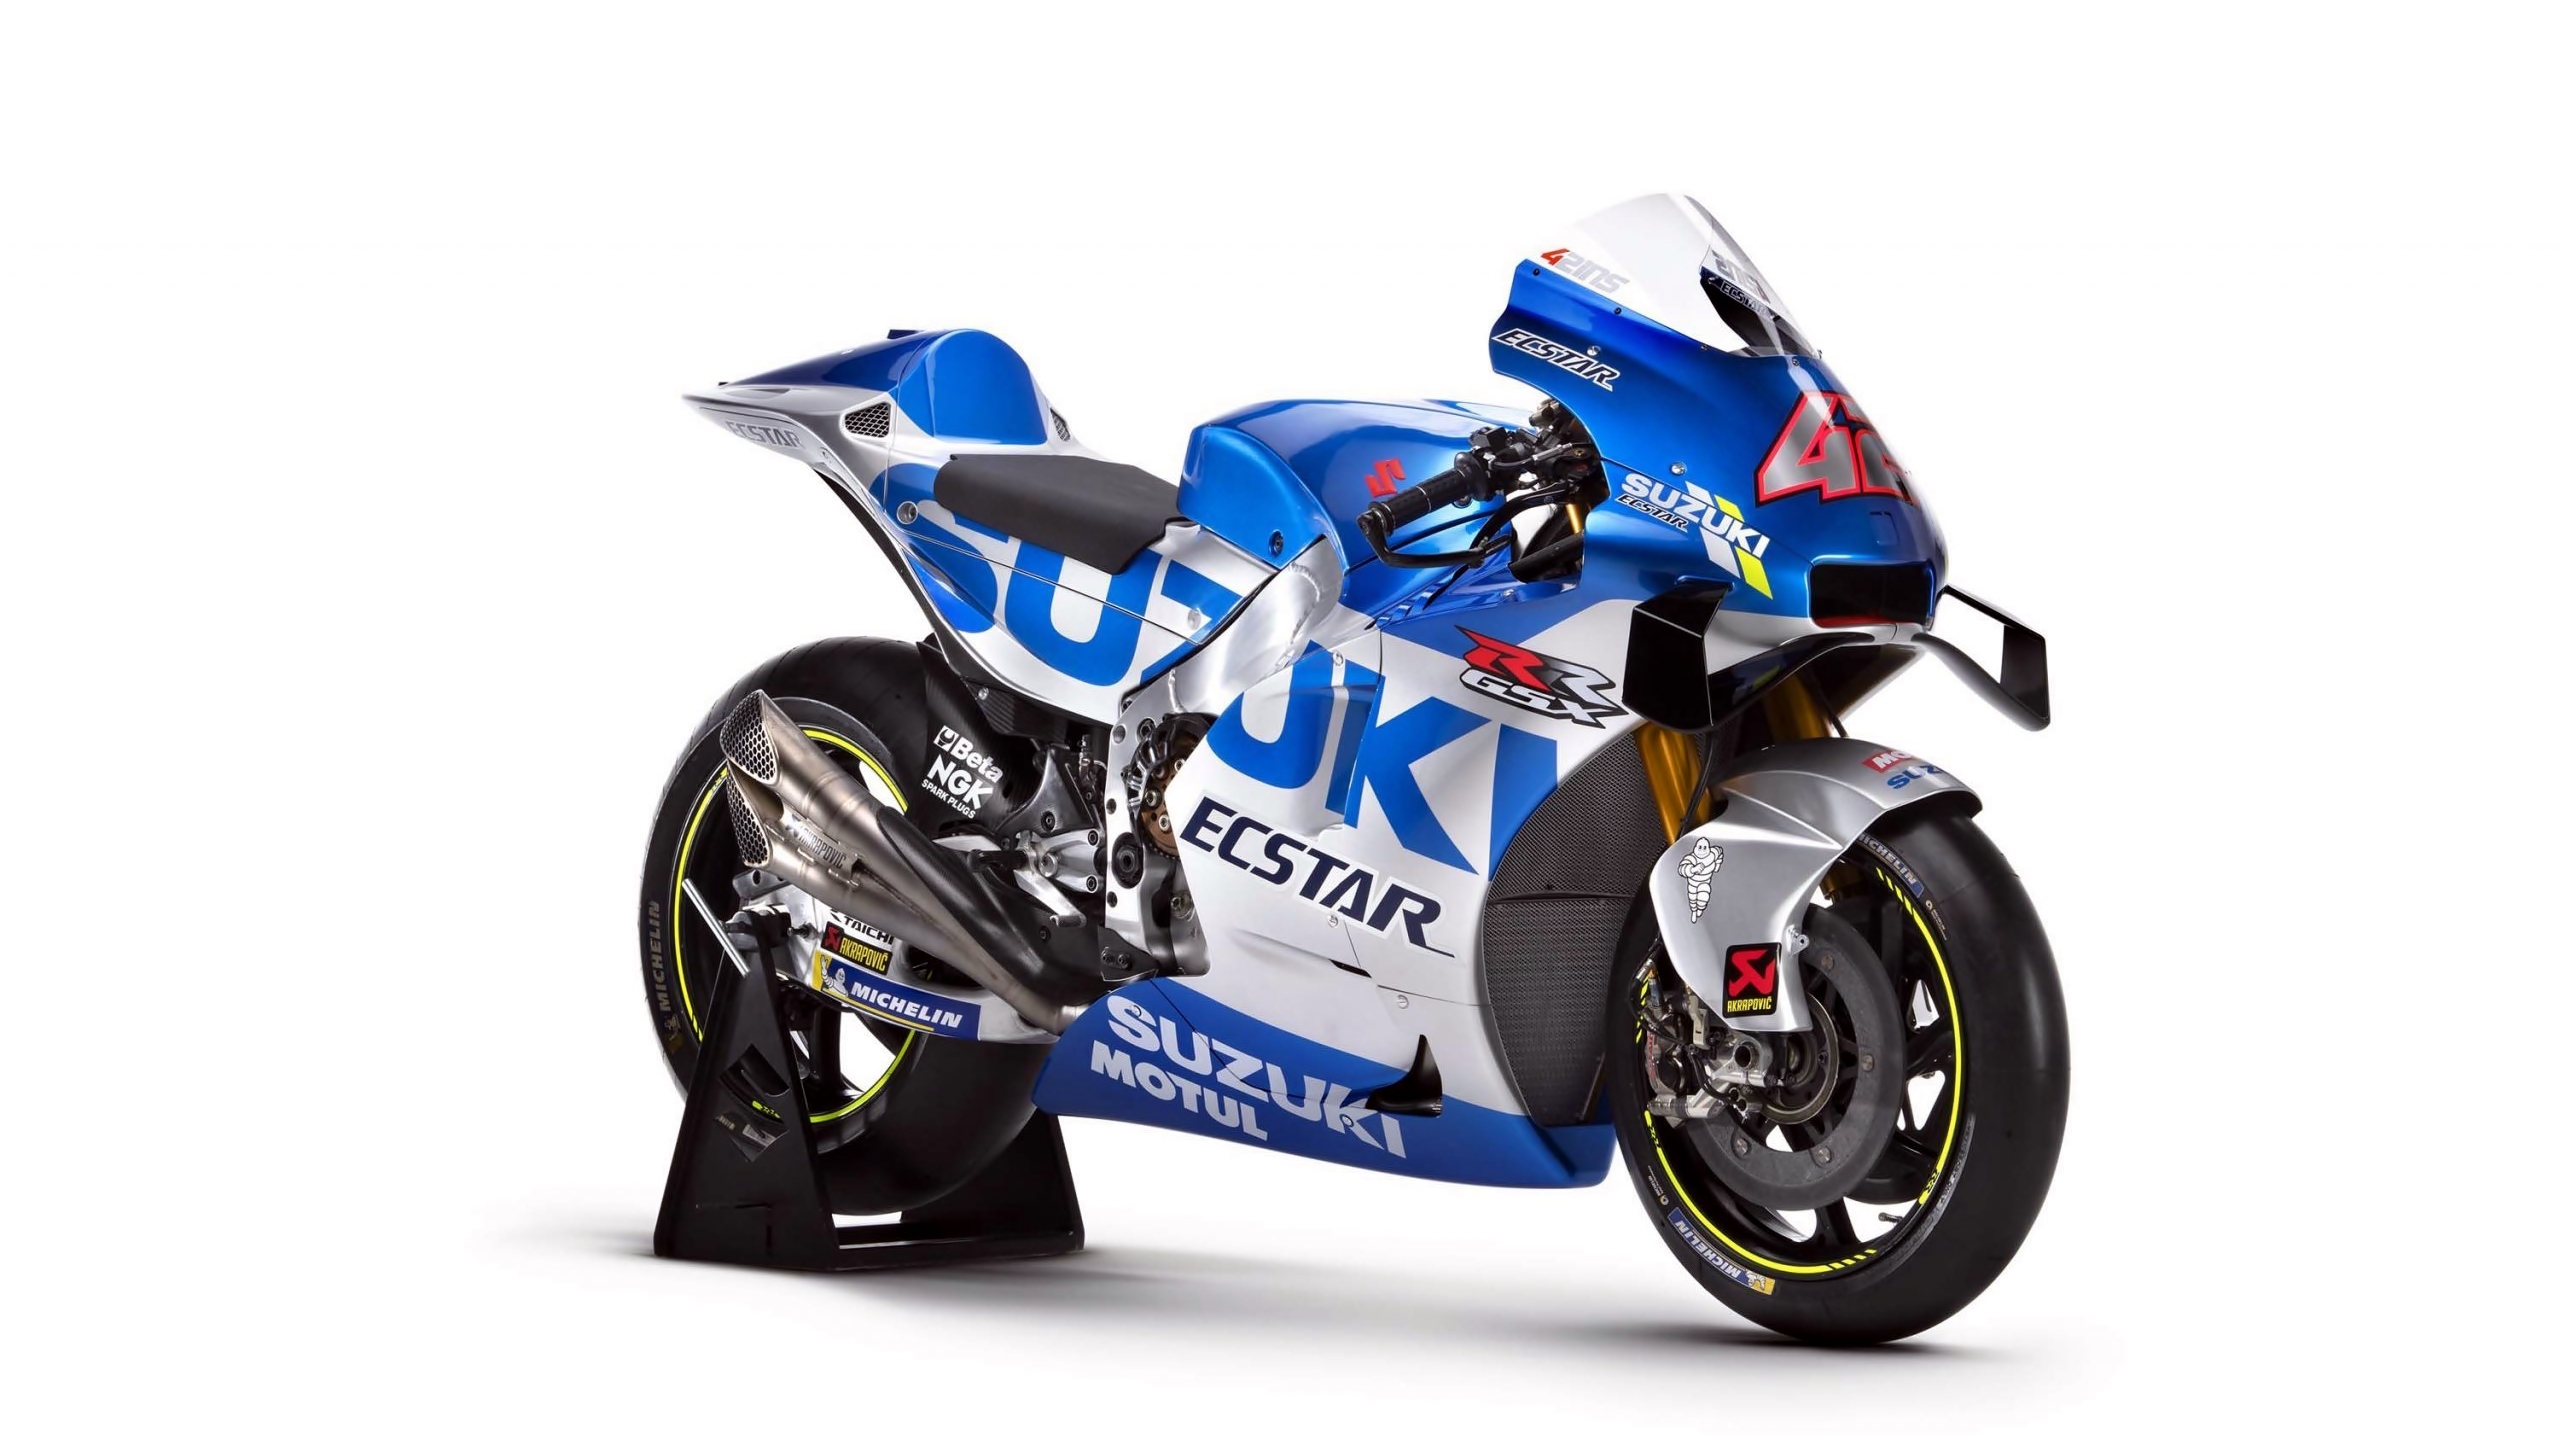 Motocykl, Suzuki GSX-RR, Wyścigowy, 2020